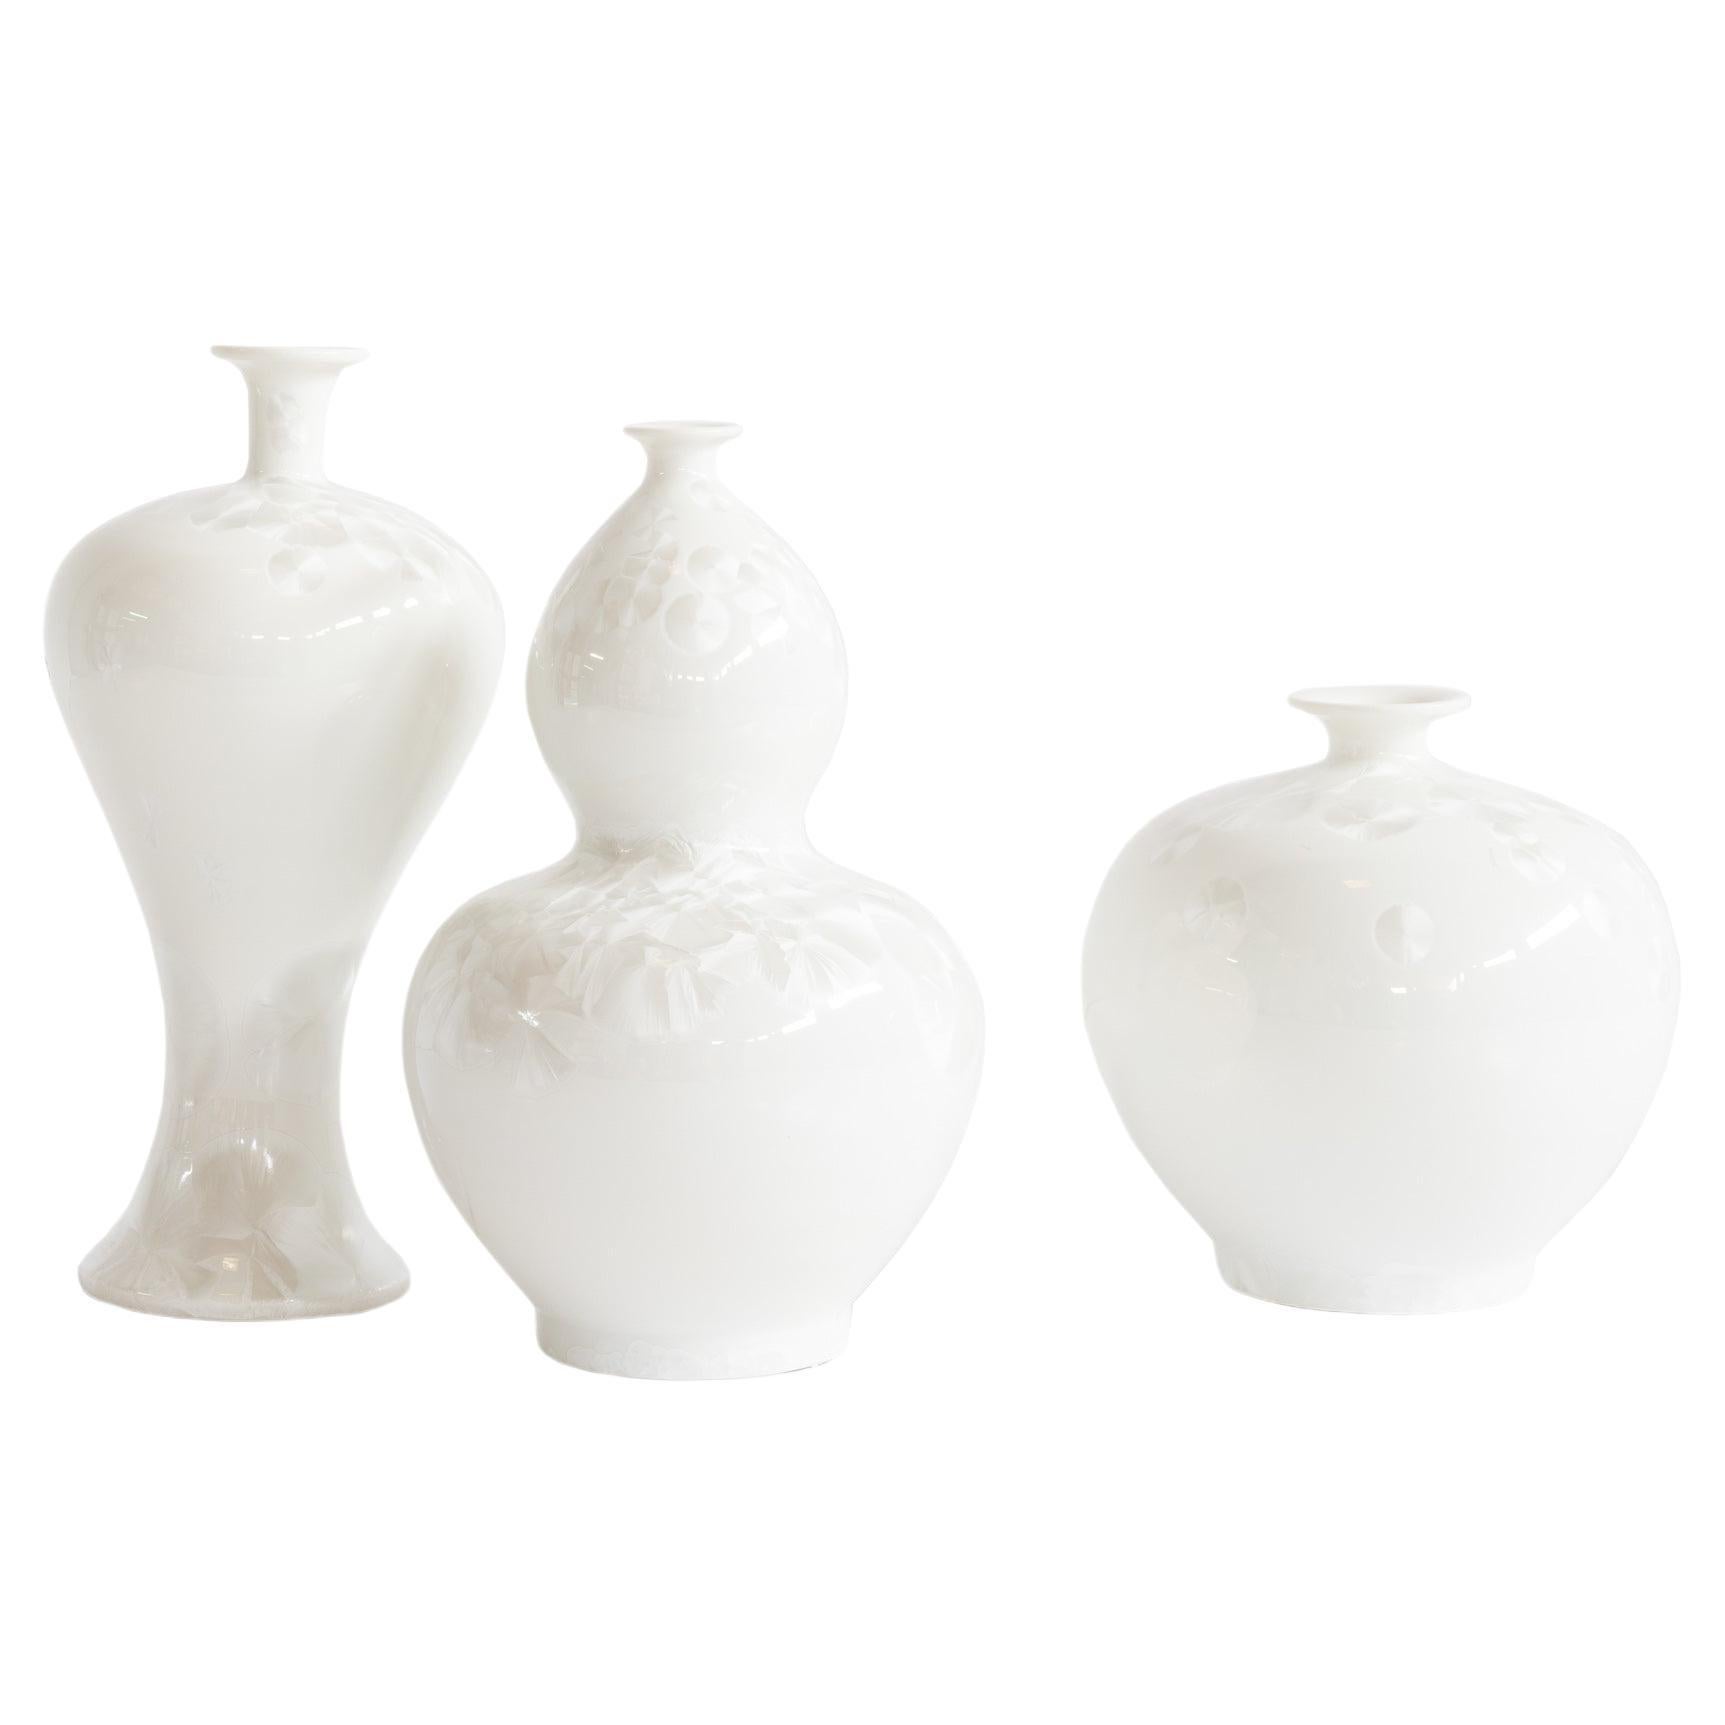 Set/3 Porcelain Vases, DiaoChan Vases, White, by Lusitanus Home